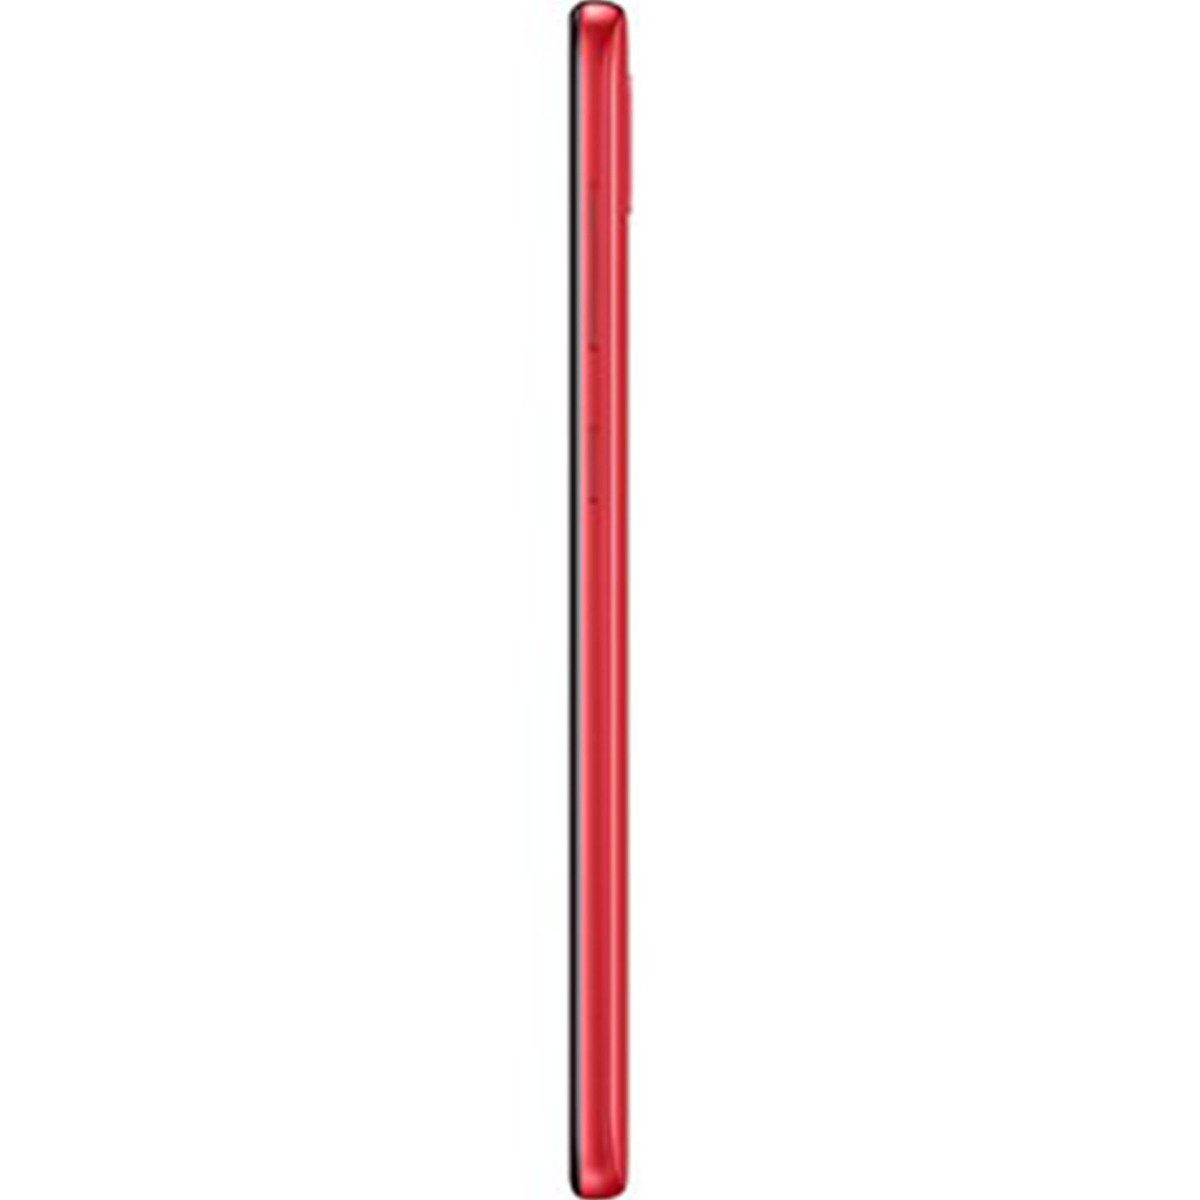 Samsung Galaxy A20 SMA205 32GB Red